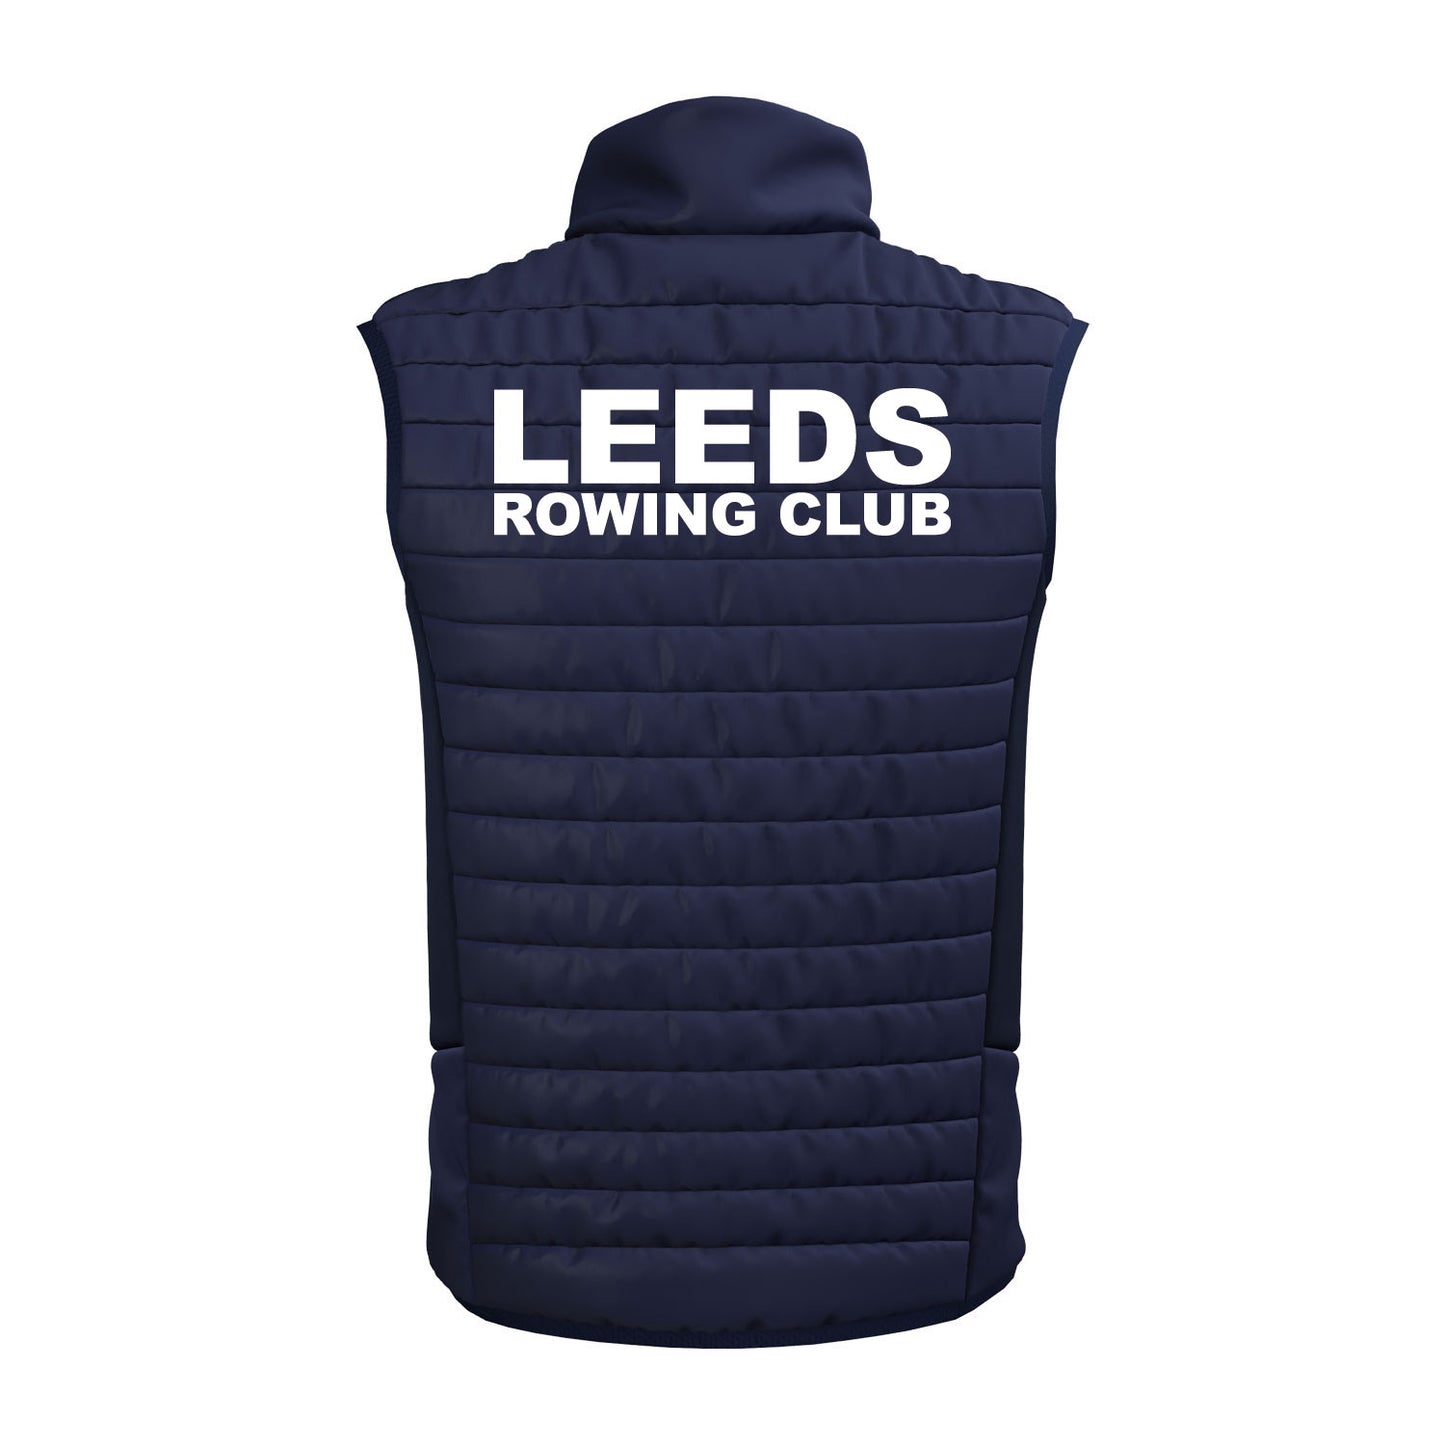 Leeds Rowing Club Apex Gilet